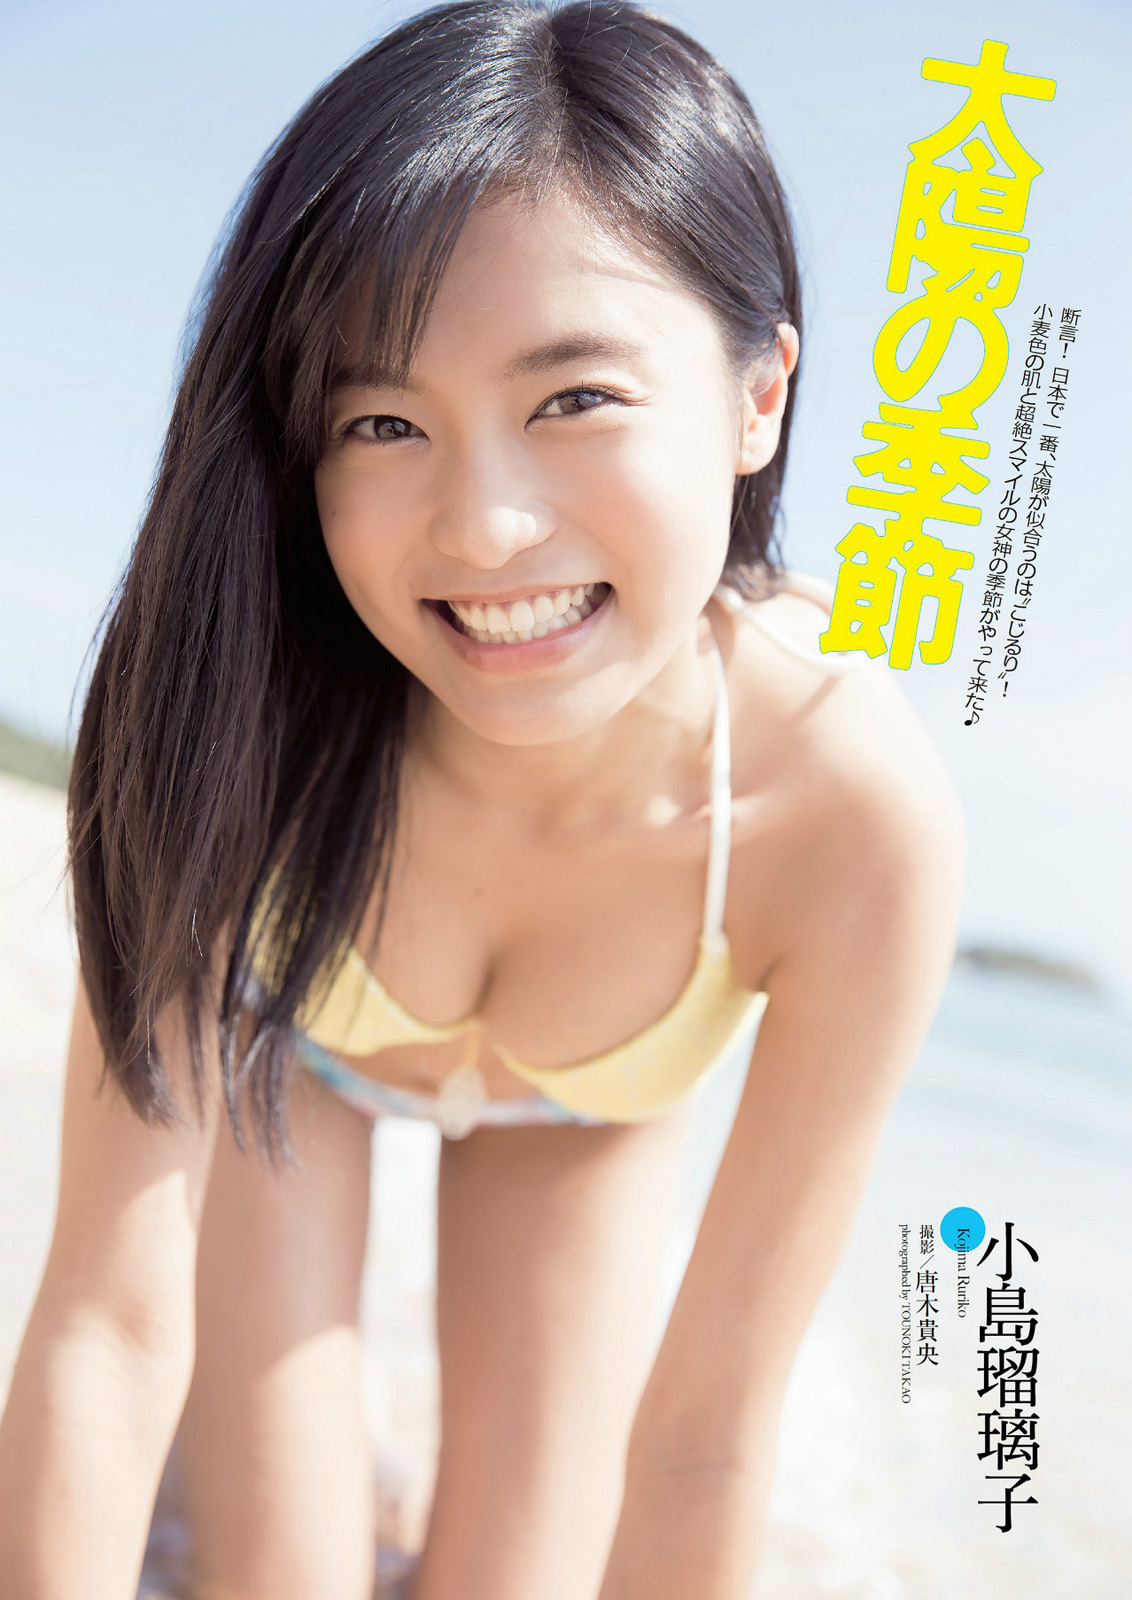 太陽の季節 小島瑠璃子 グラビア水着画像 36枚 断言 日本で一番 太陽が似合うのはこじるり 芸能アイドルモデル女優水着画像集